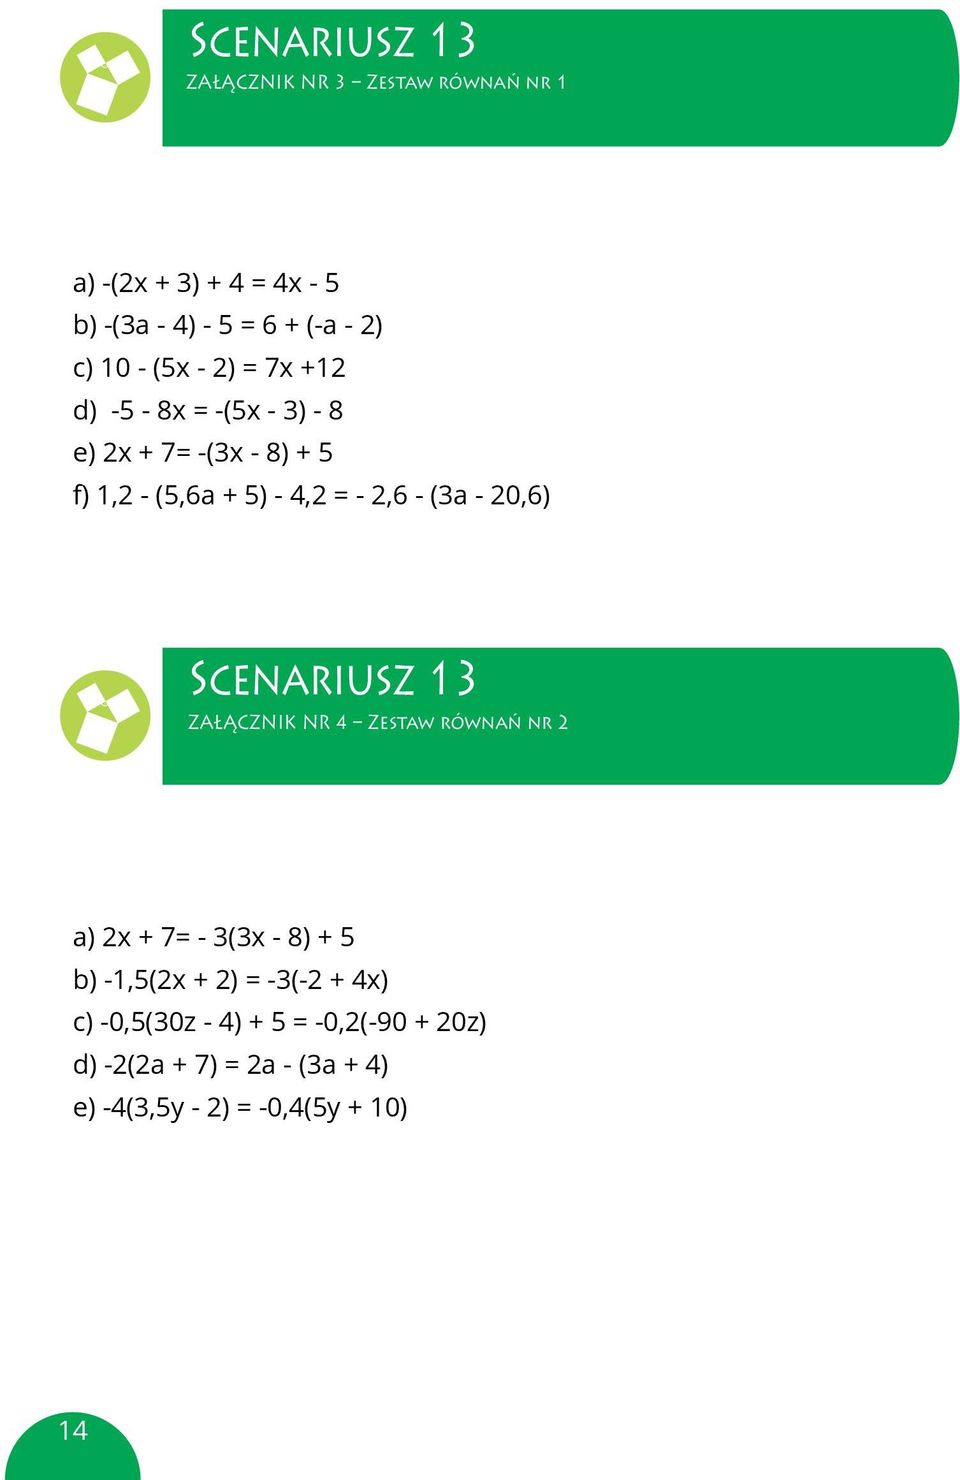 f) 1,2 (5,6a + 5) 4,2 = 2,6 + (3,6a + 20,6) f) 1,2 - (5,6a + 5) - 4,2 = - 2,6 - (3a - 20,6) Scenariusz 13 ZAŁĄCZNIK załącznik nr NR 4 interaktywna Zestaw równań waga nr 2 zestaw ćwiczeń nr 2 a) 2x +